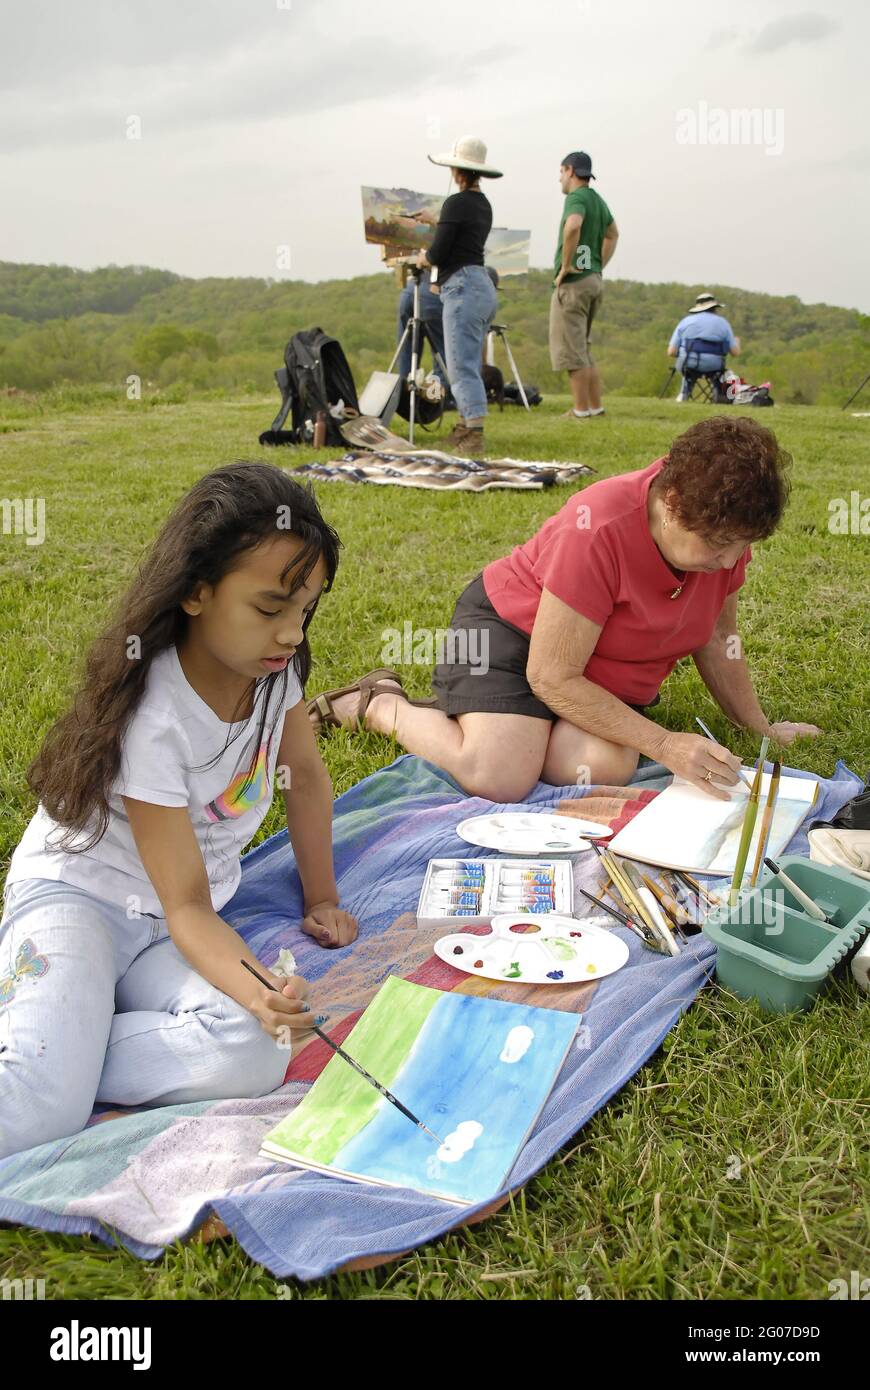 AUGUSTA, ÉTATS-UNIS - 30 avril 2009 : une jeune fille et des adultes peinture à l'air plein dans le paysage du Missouri. Banque D'Images